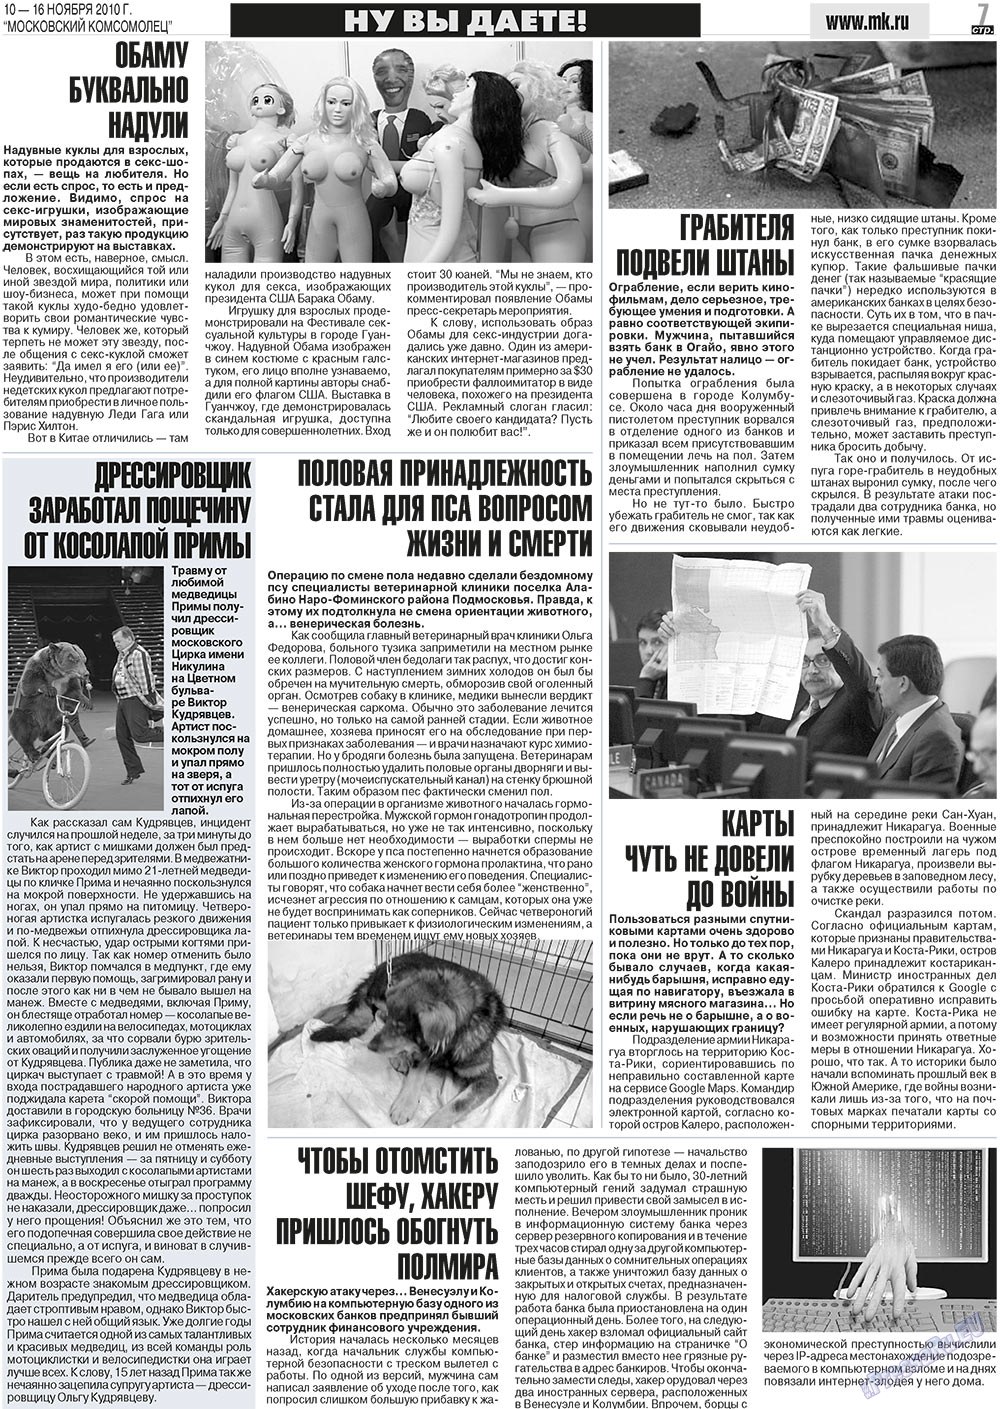 МК Испания, газета. 2010 №45 стр.7